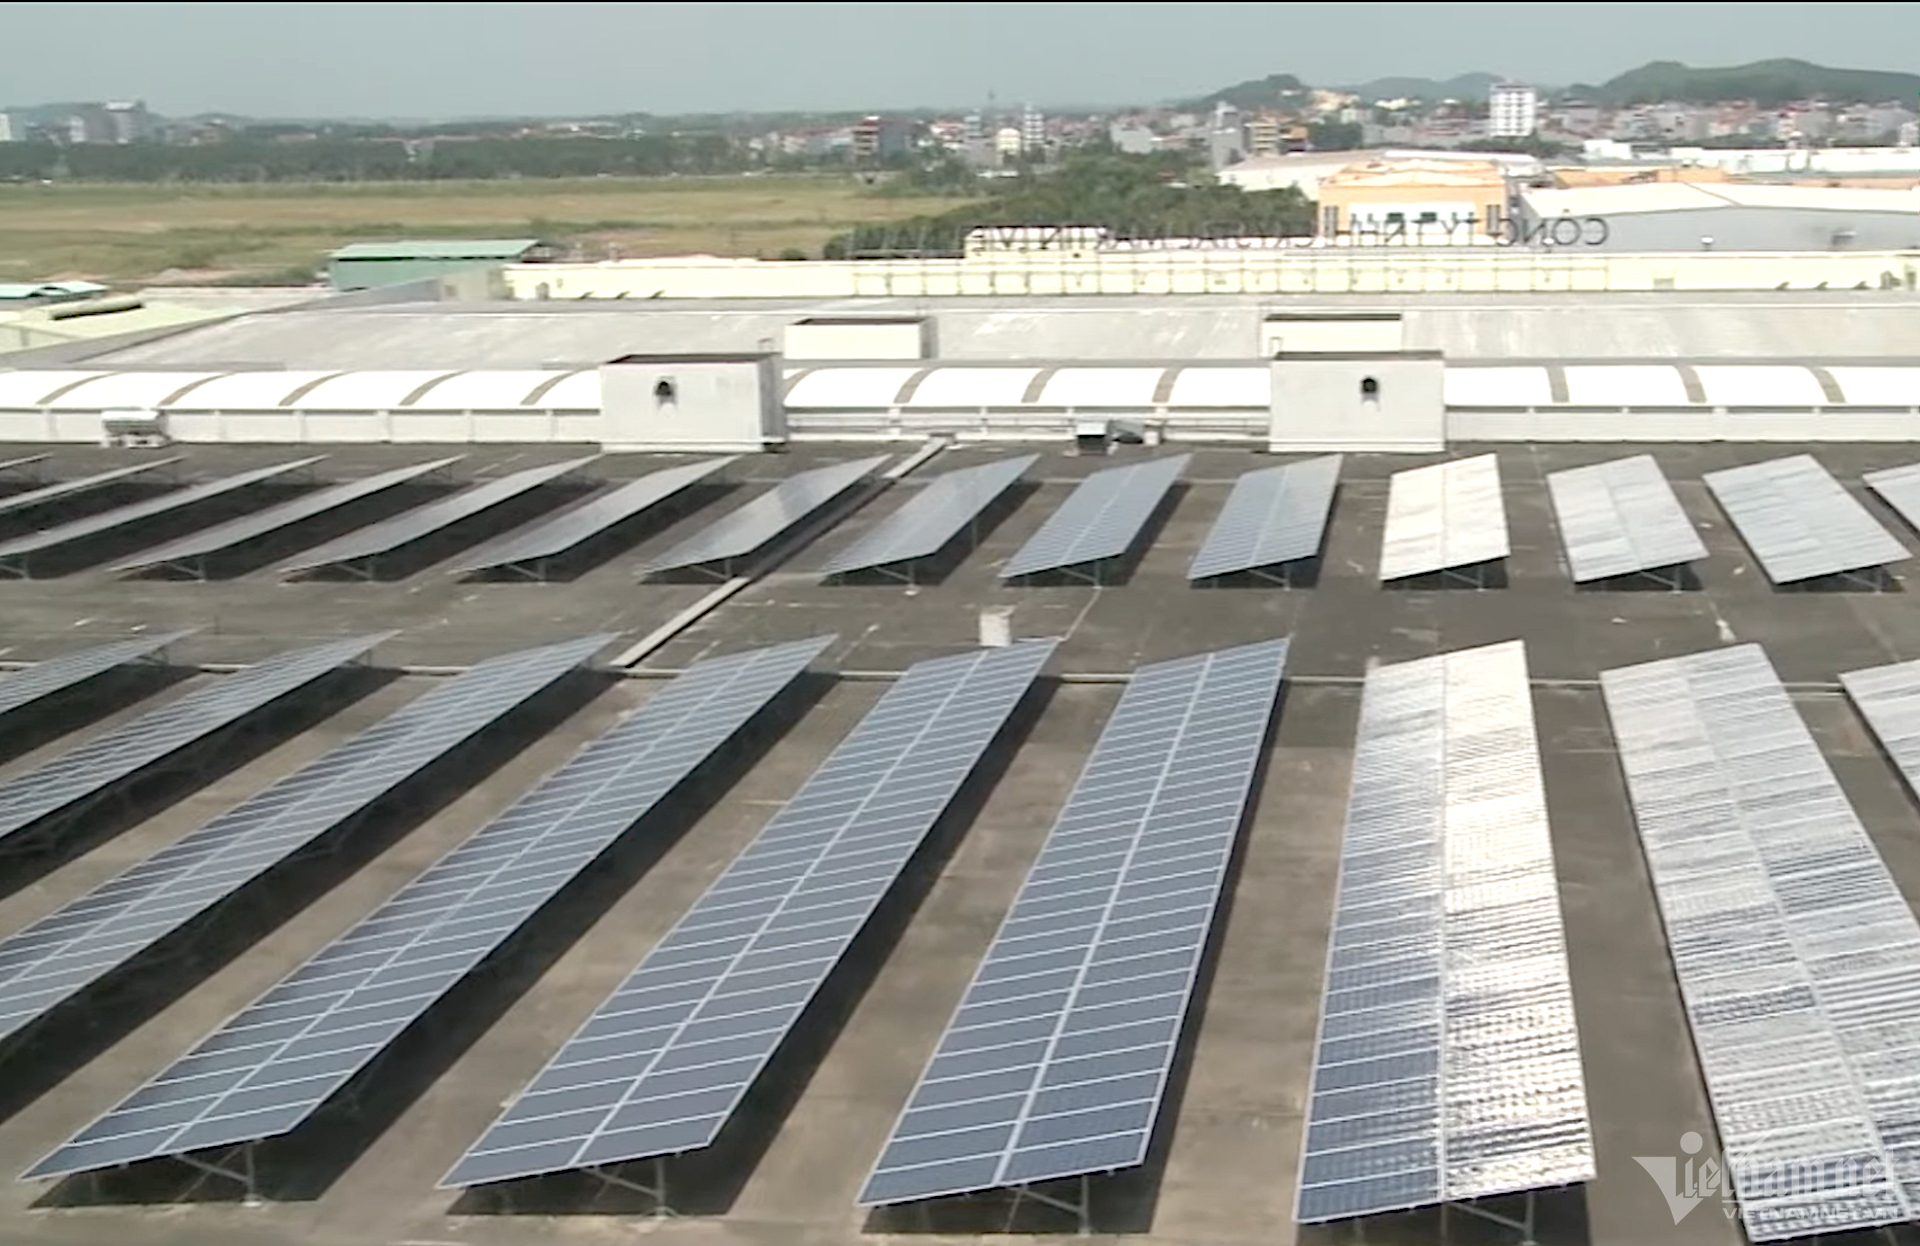 Khu công nghiệp Hòa Bình, tỉnh Long An dự kiến sẽ chuyển hoá sang sử dụng năng lượng mặt trời trong thời gian tới.